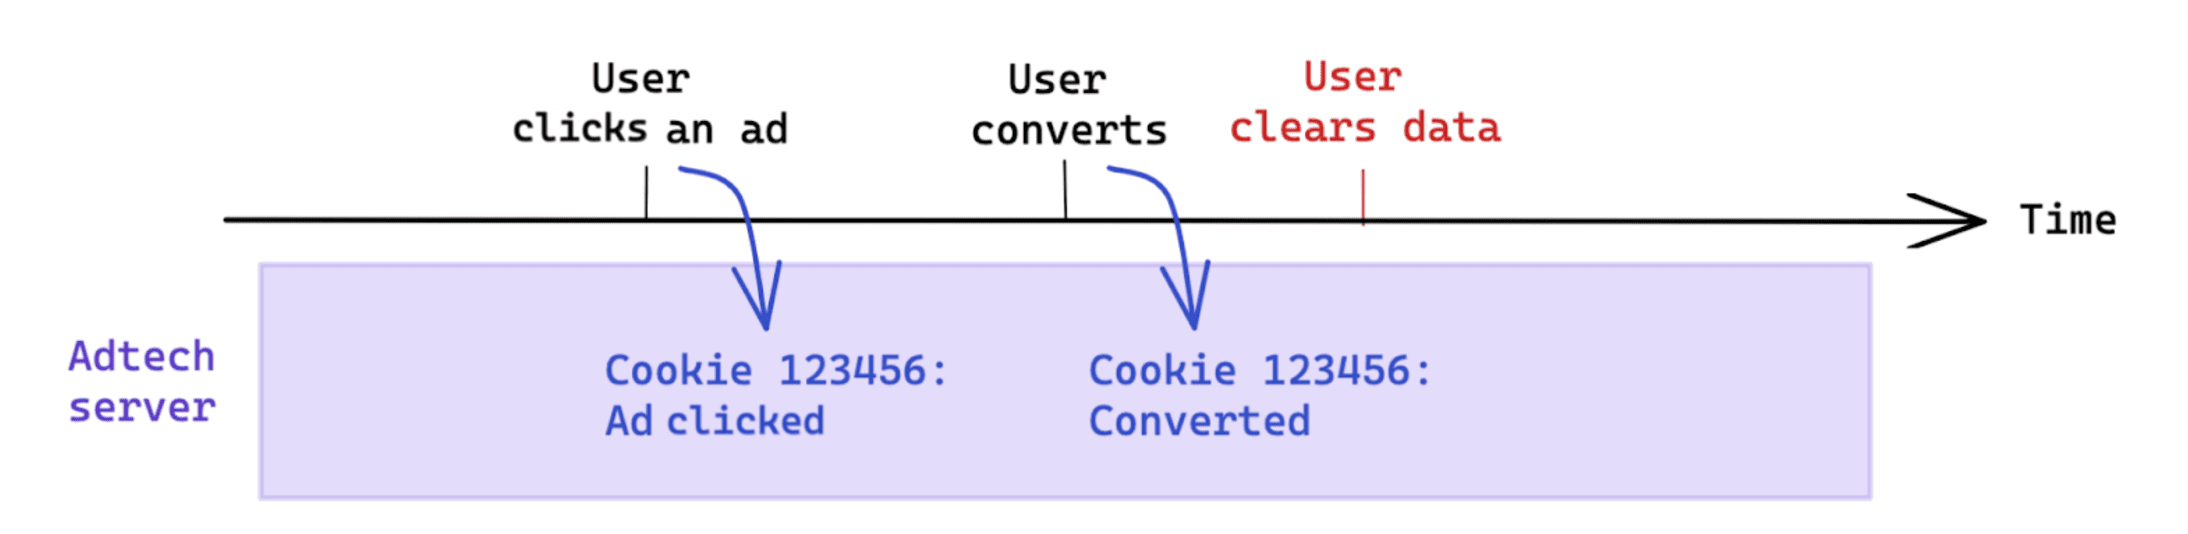 कन्वर्ज़न के बाद, उपयोगकर्ता की ओर से डेटा हटाने की प्रक्रिया से कुकी पर आधारित मेज़रमेंट पर कोई असर नहीं पड़ता.